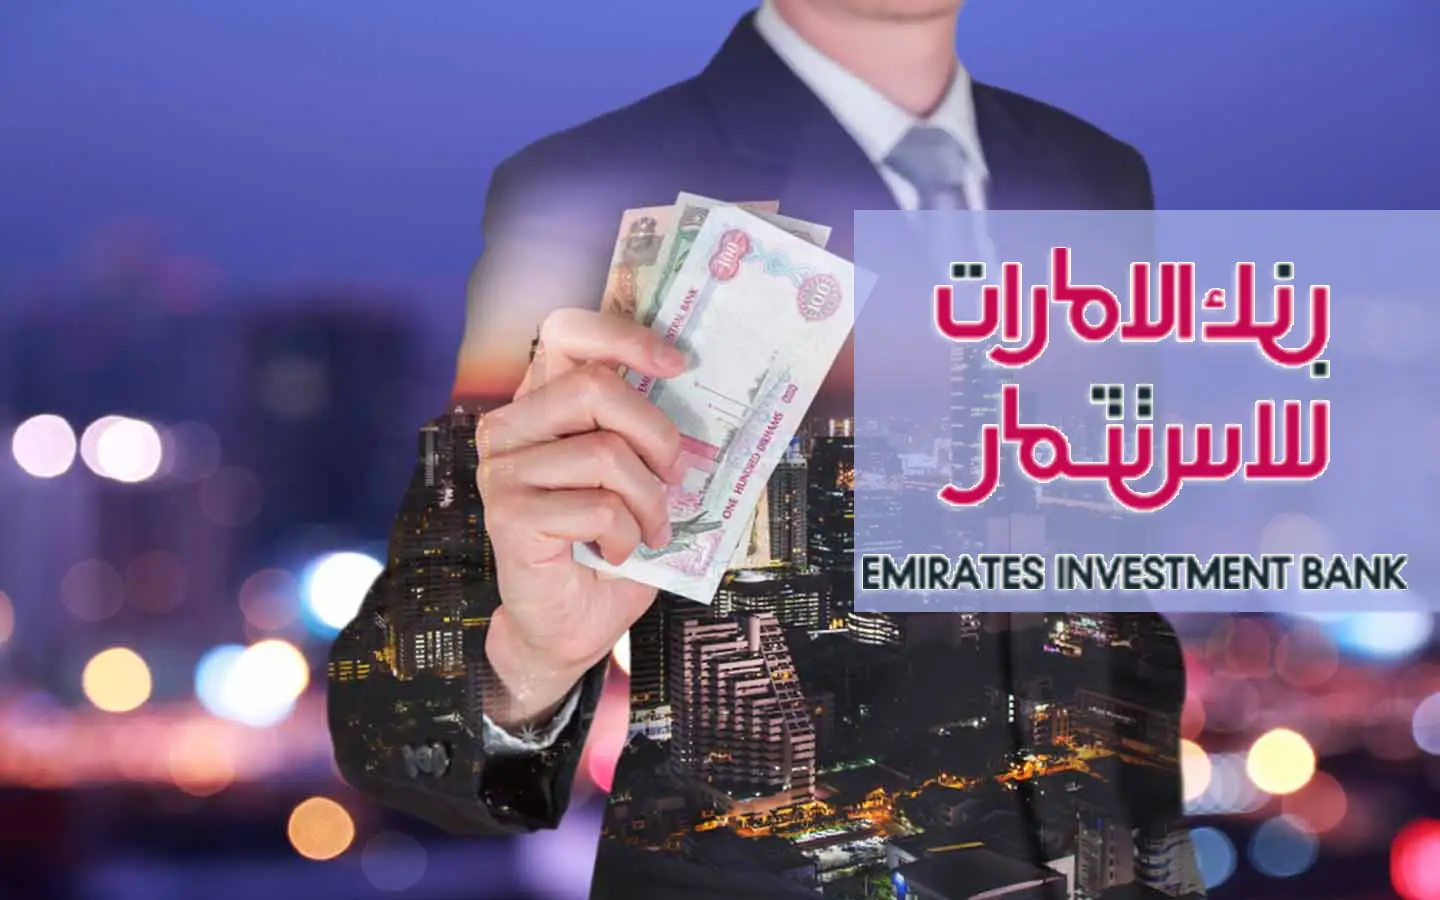 فتح حساب في بنك الإمارات العربية للاستثمار